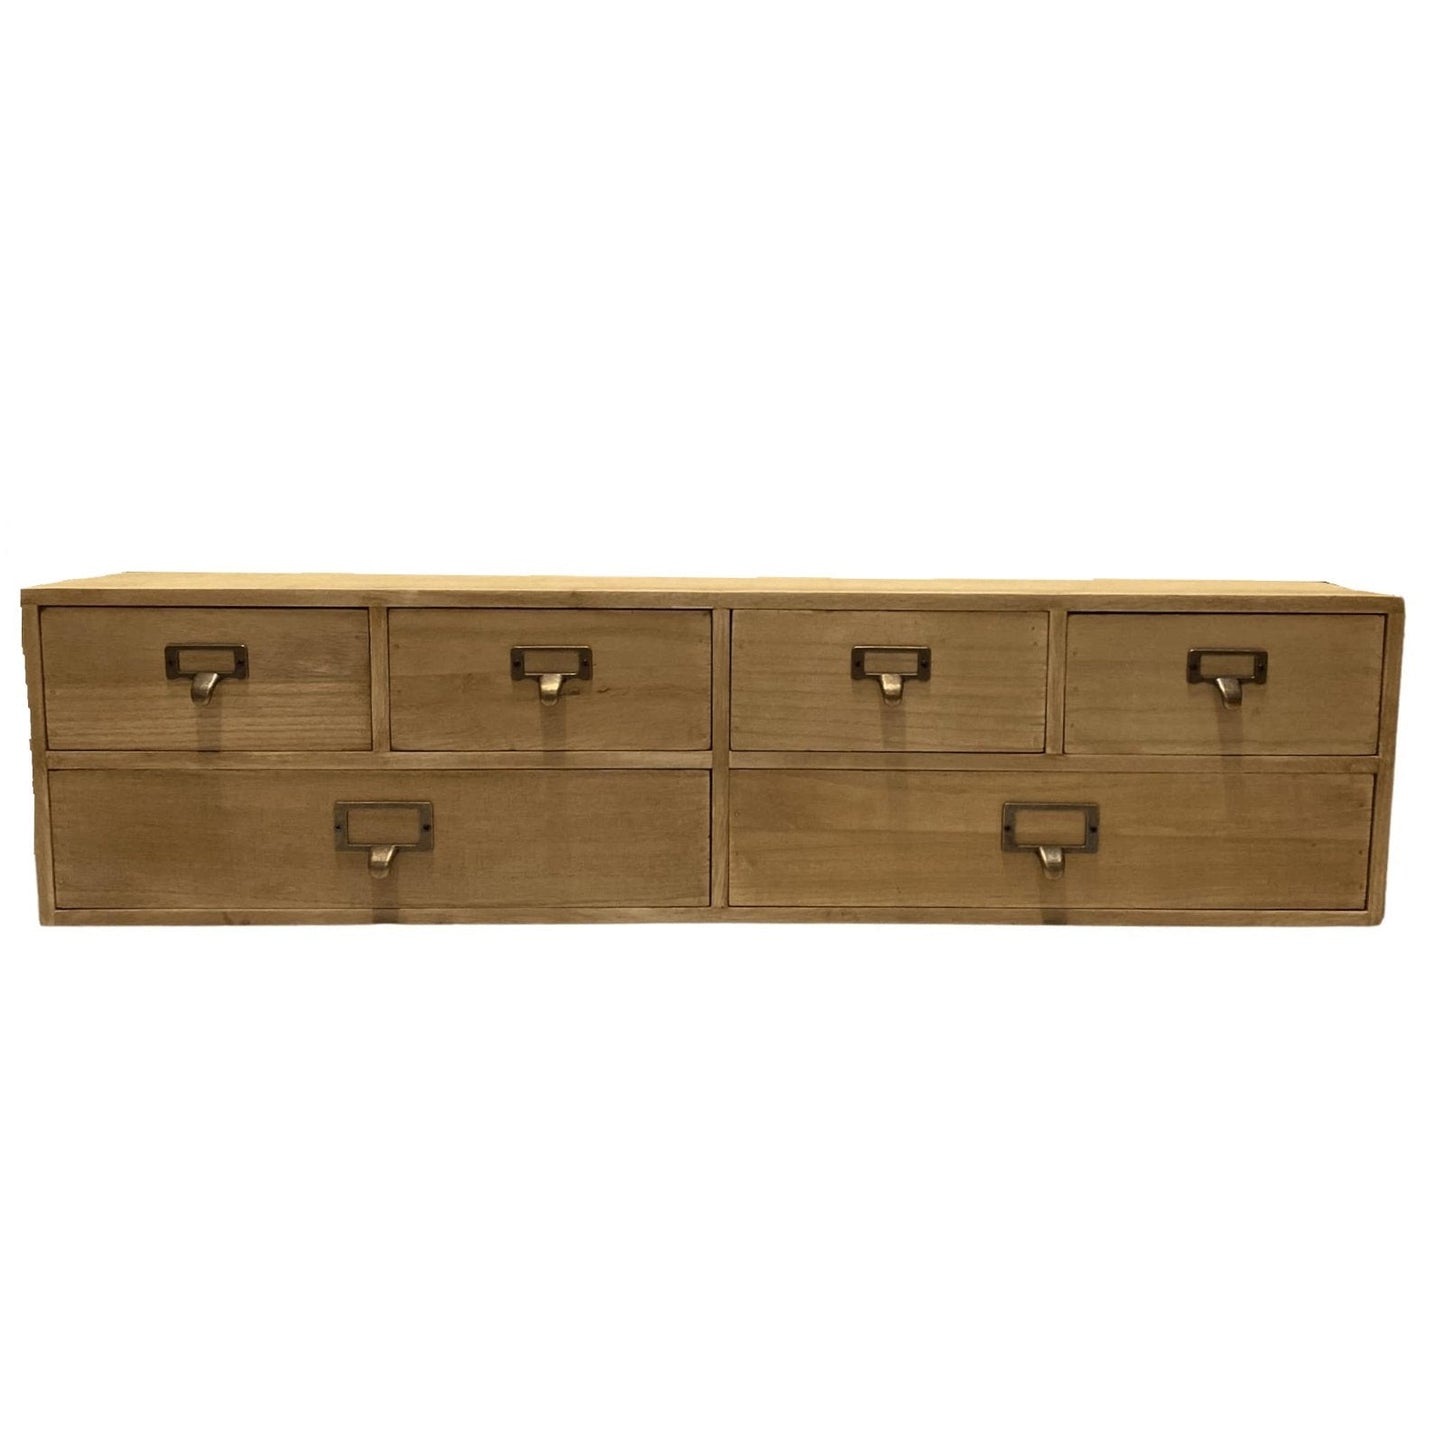 Wide 6 Drawers Wood Storage Organizer 80 x 15 x 20 cm - Kaftan direct